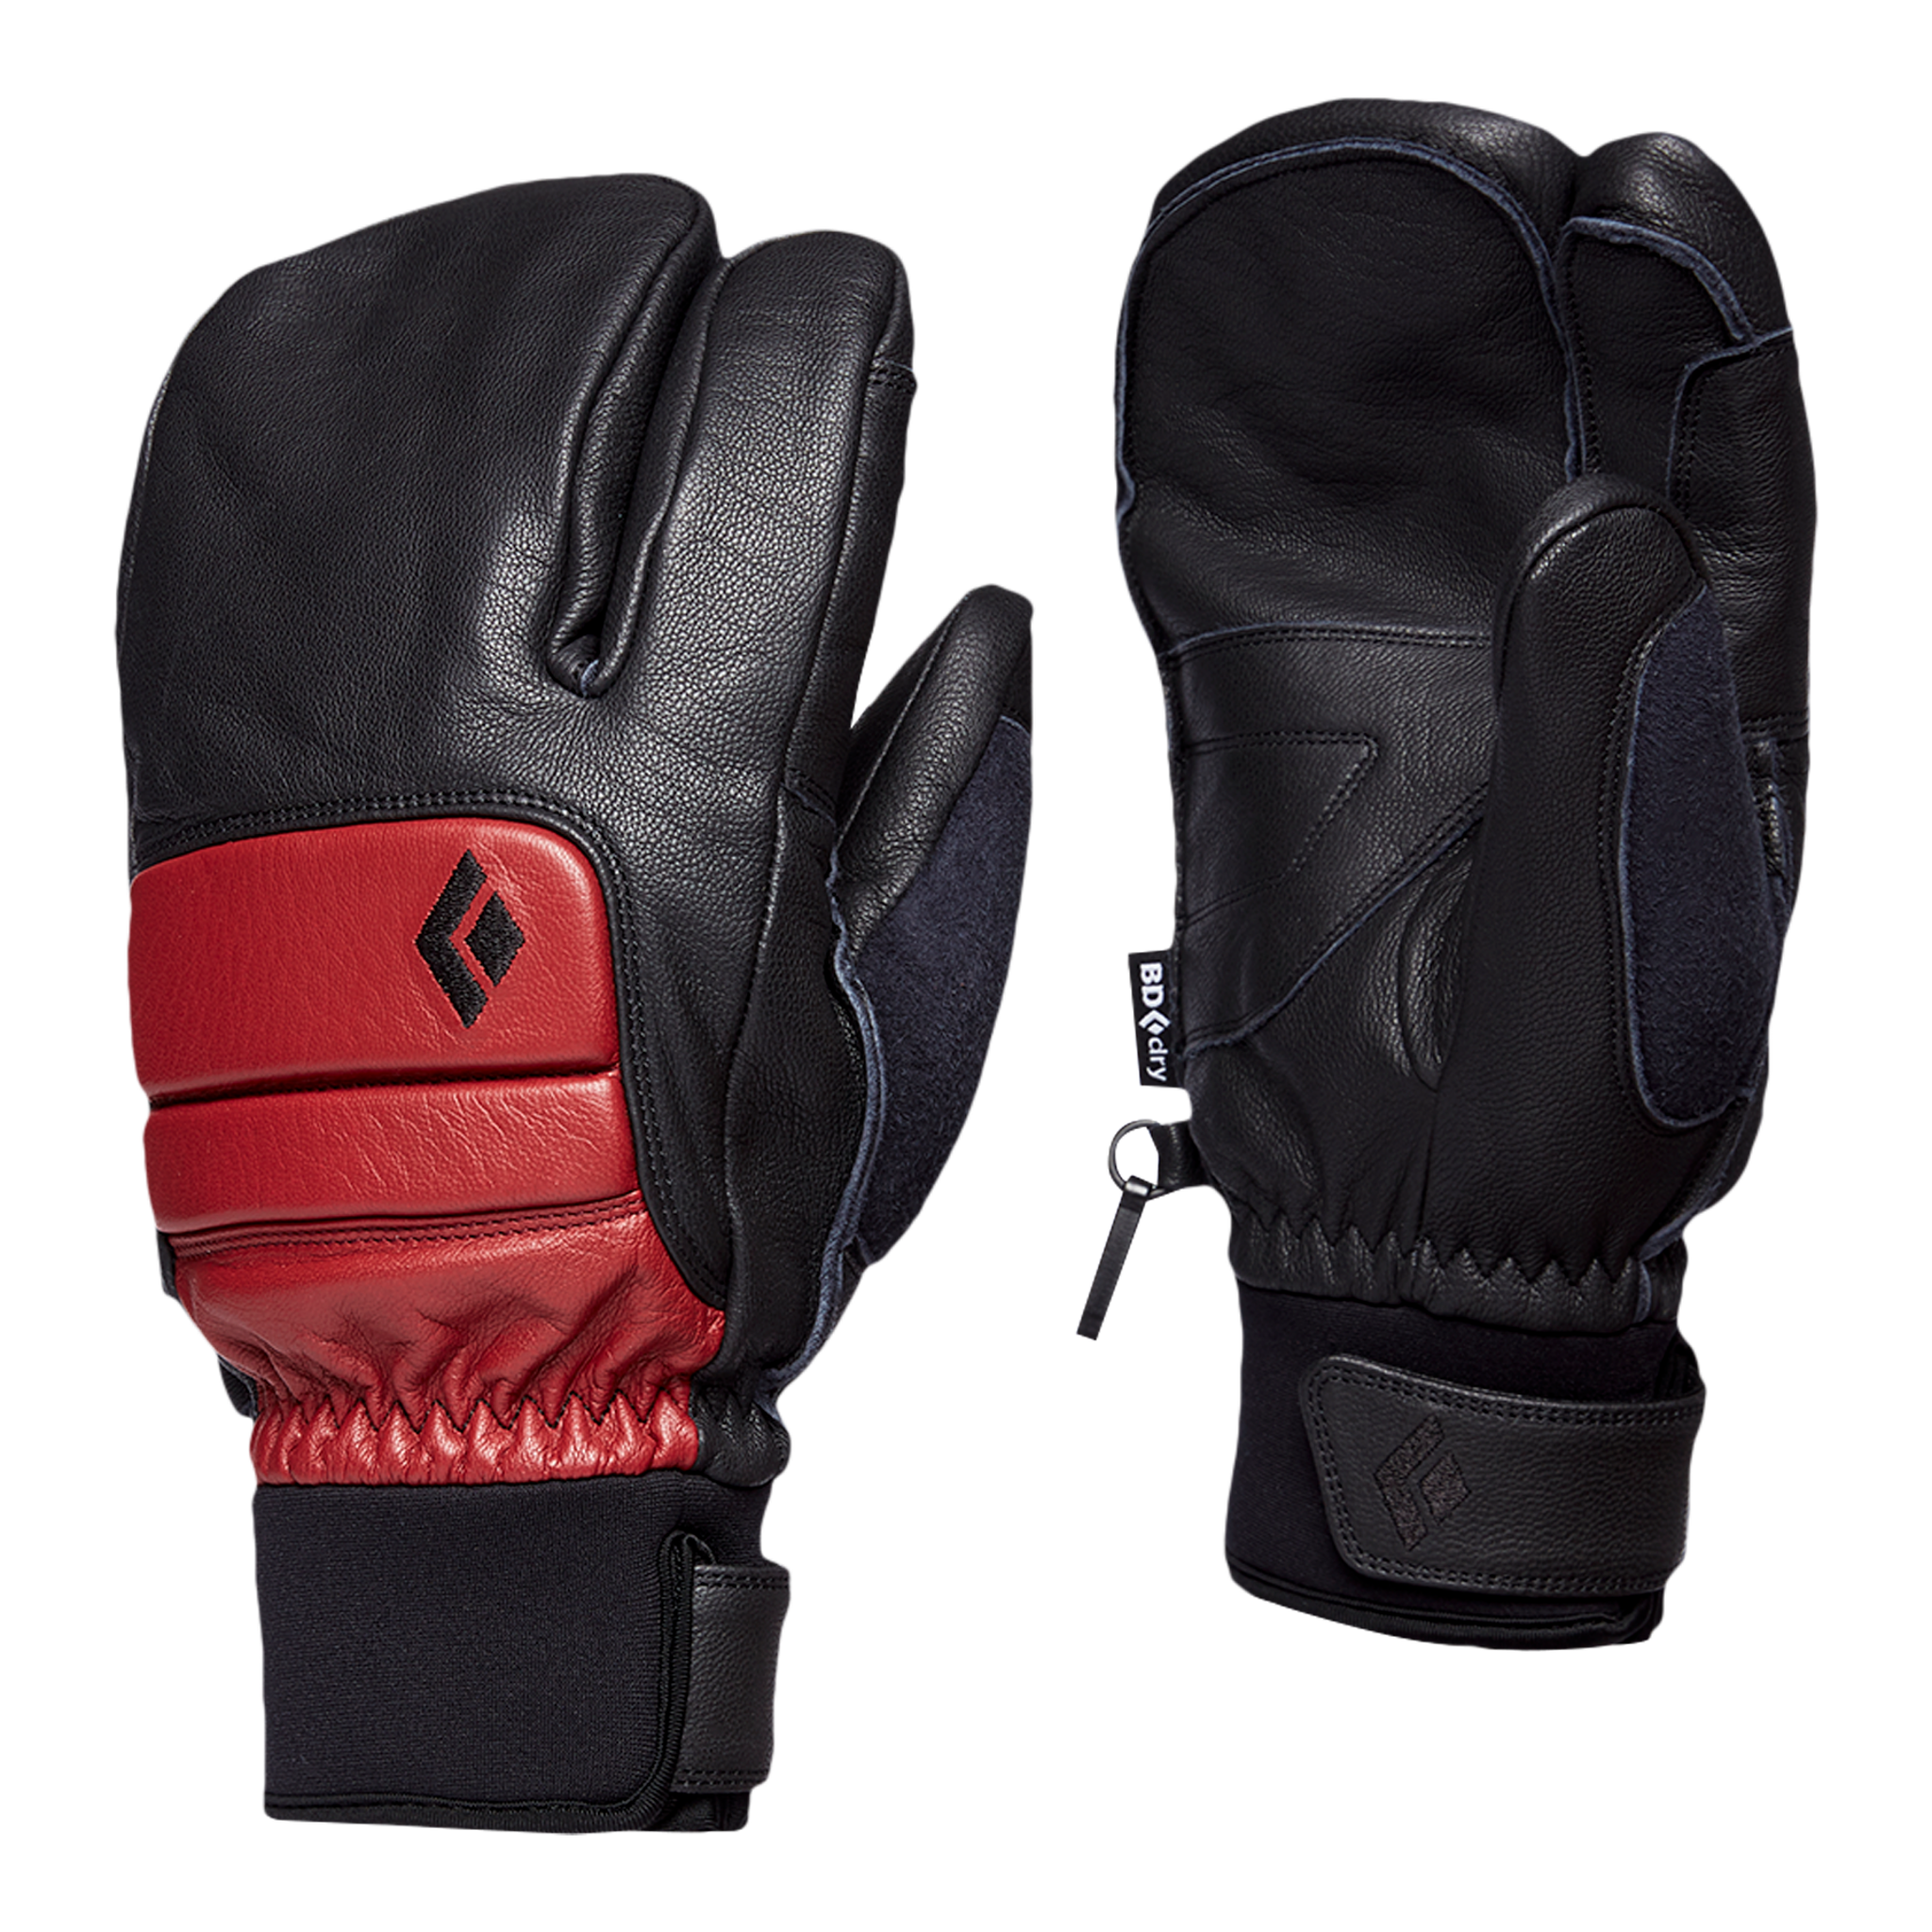 Black Diamond Equipment Men's Spark Finger Gloves, Medium Dark Crimson